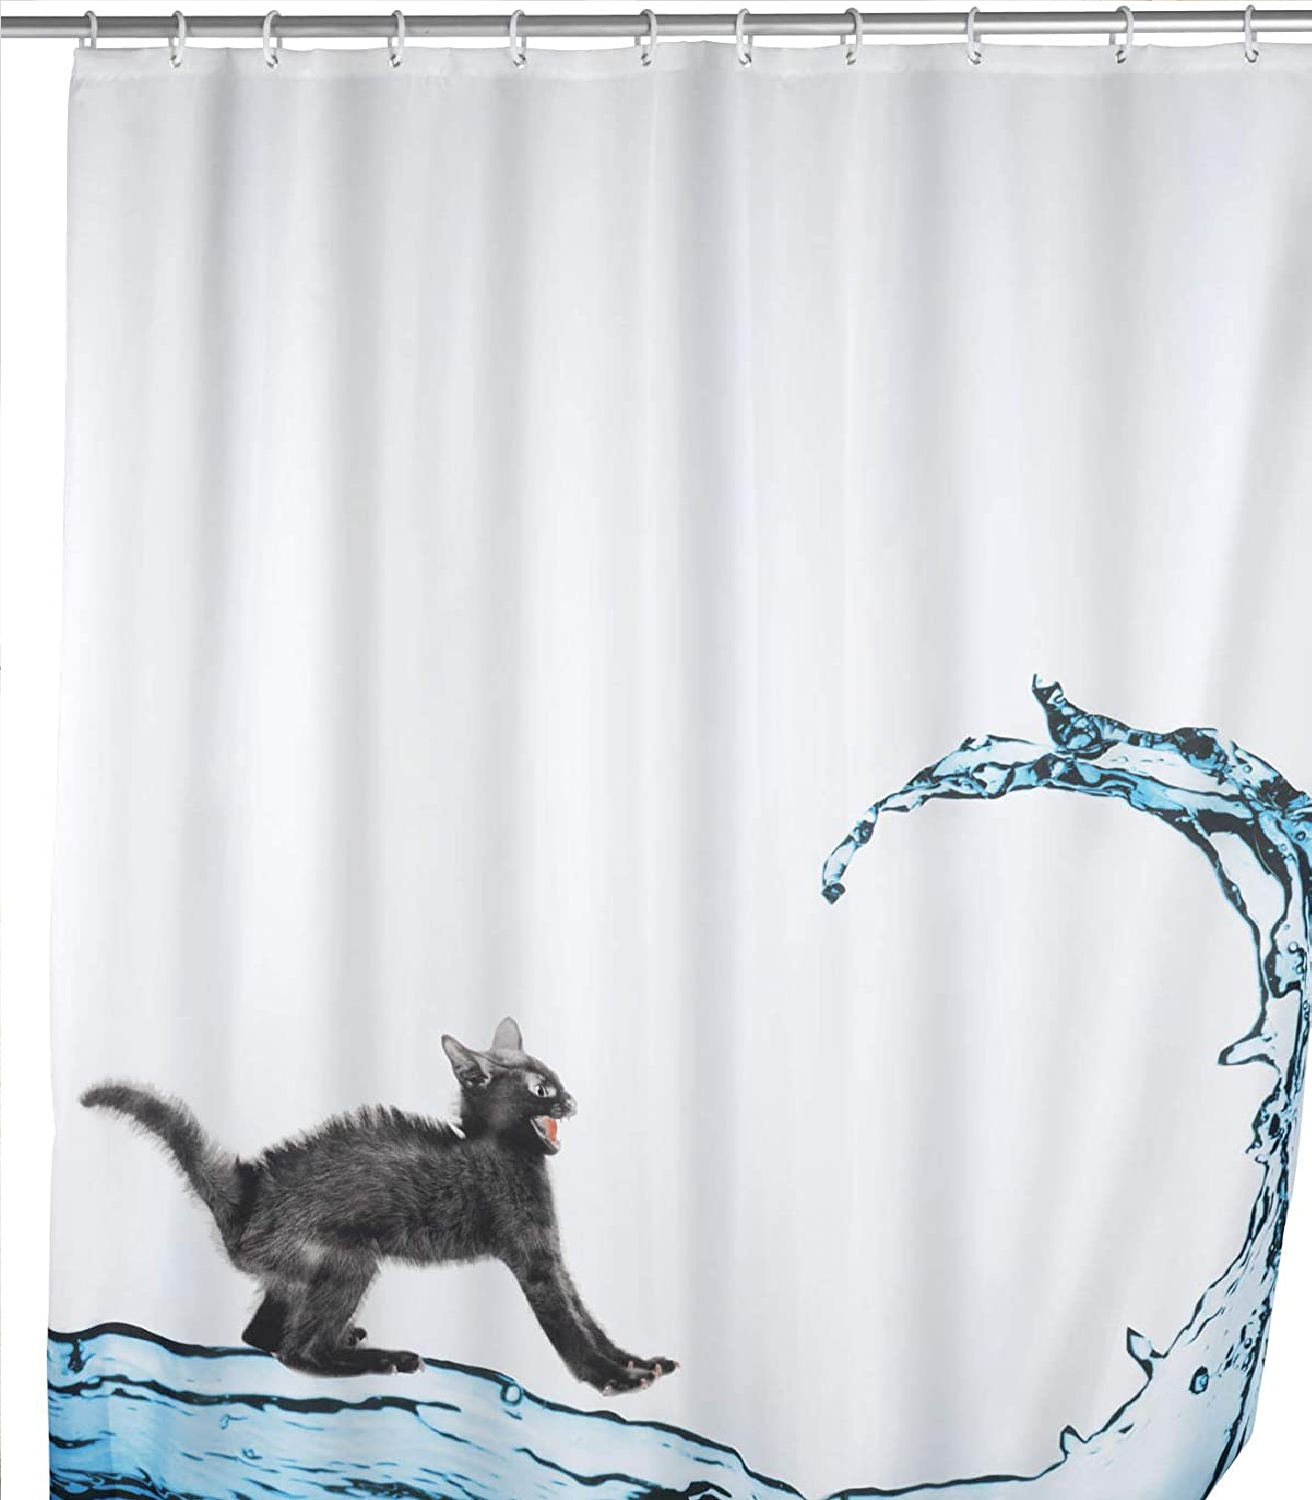 Anti-Schimmel Duschvorhang Cat, Textil-Vorhang mit Antischimmel Effekt fürs Badezimmer, waschbar, wasserabweisend, mit Ringen zur Befestigung an der Duschstange, 180 x 200 cm